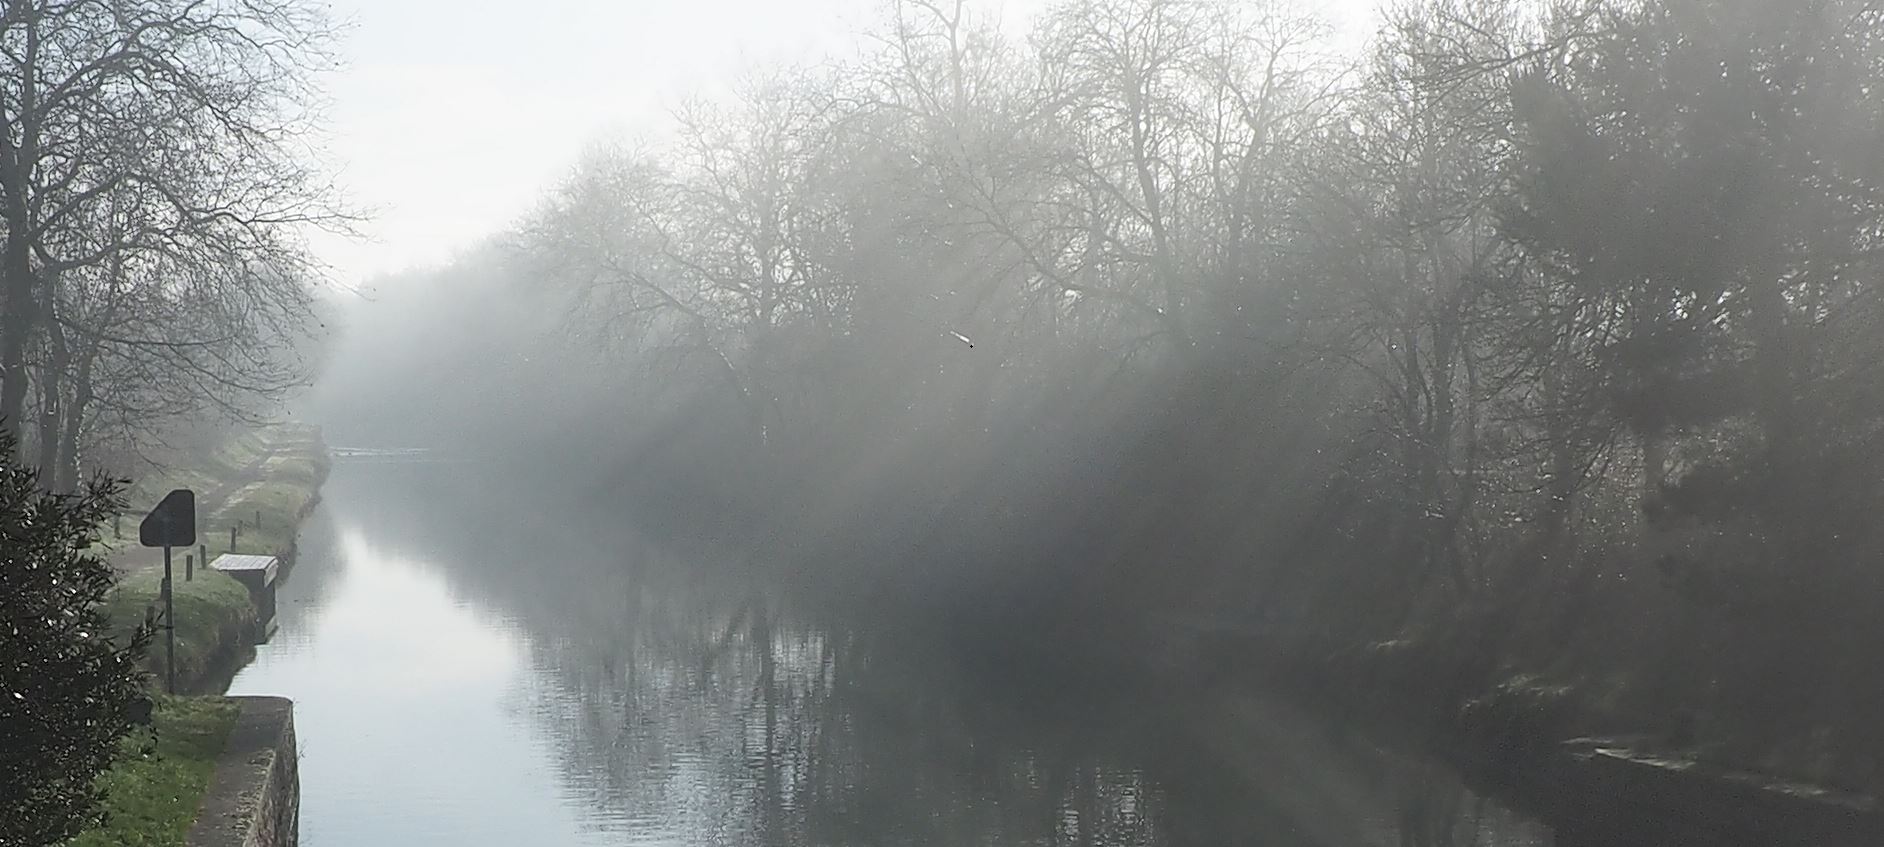 Canal du midi, brouillard